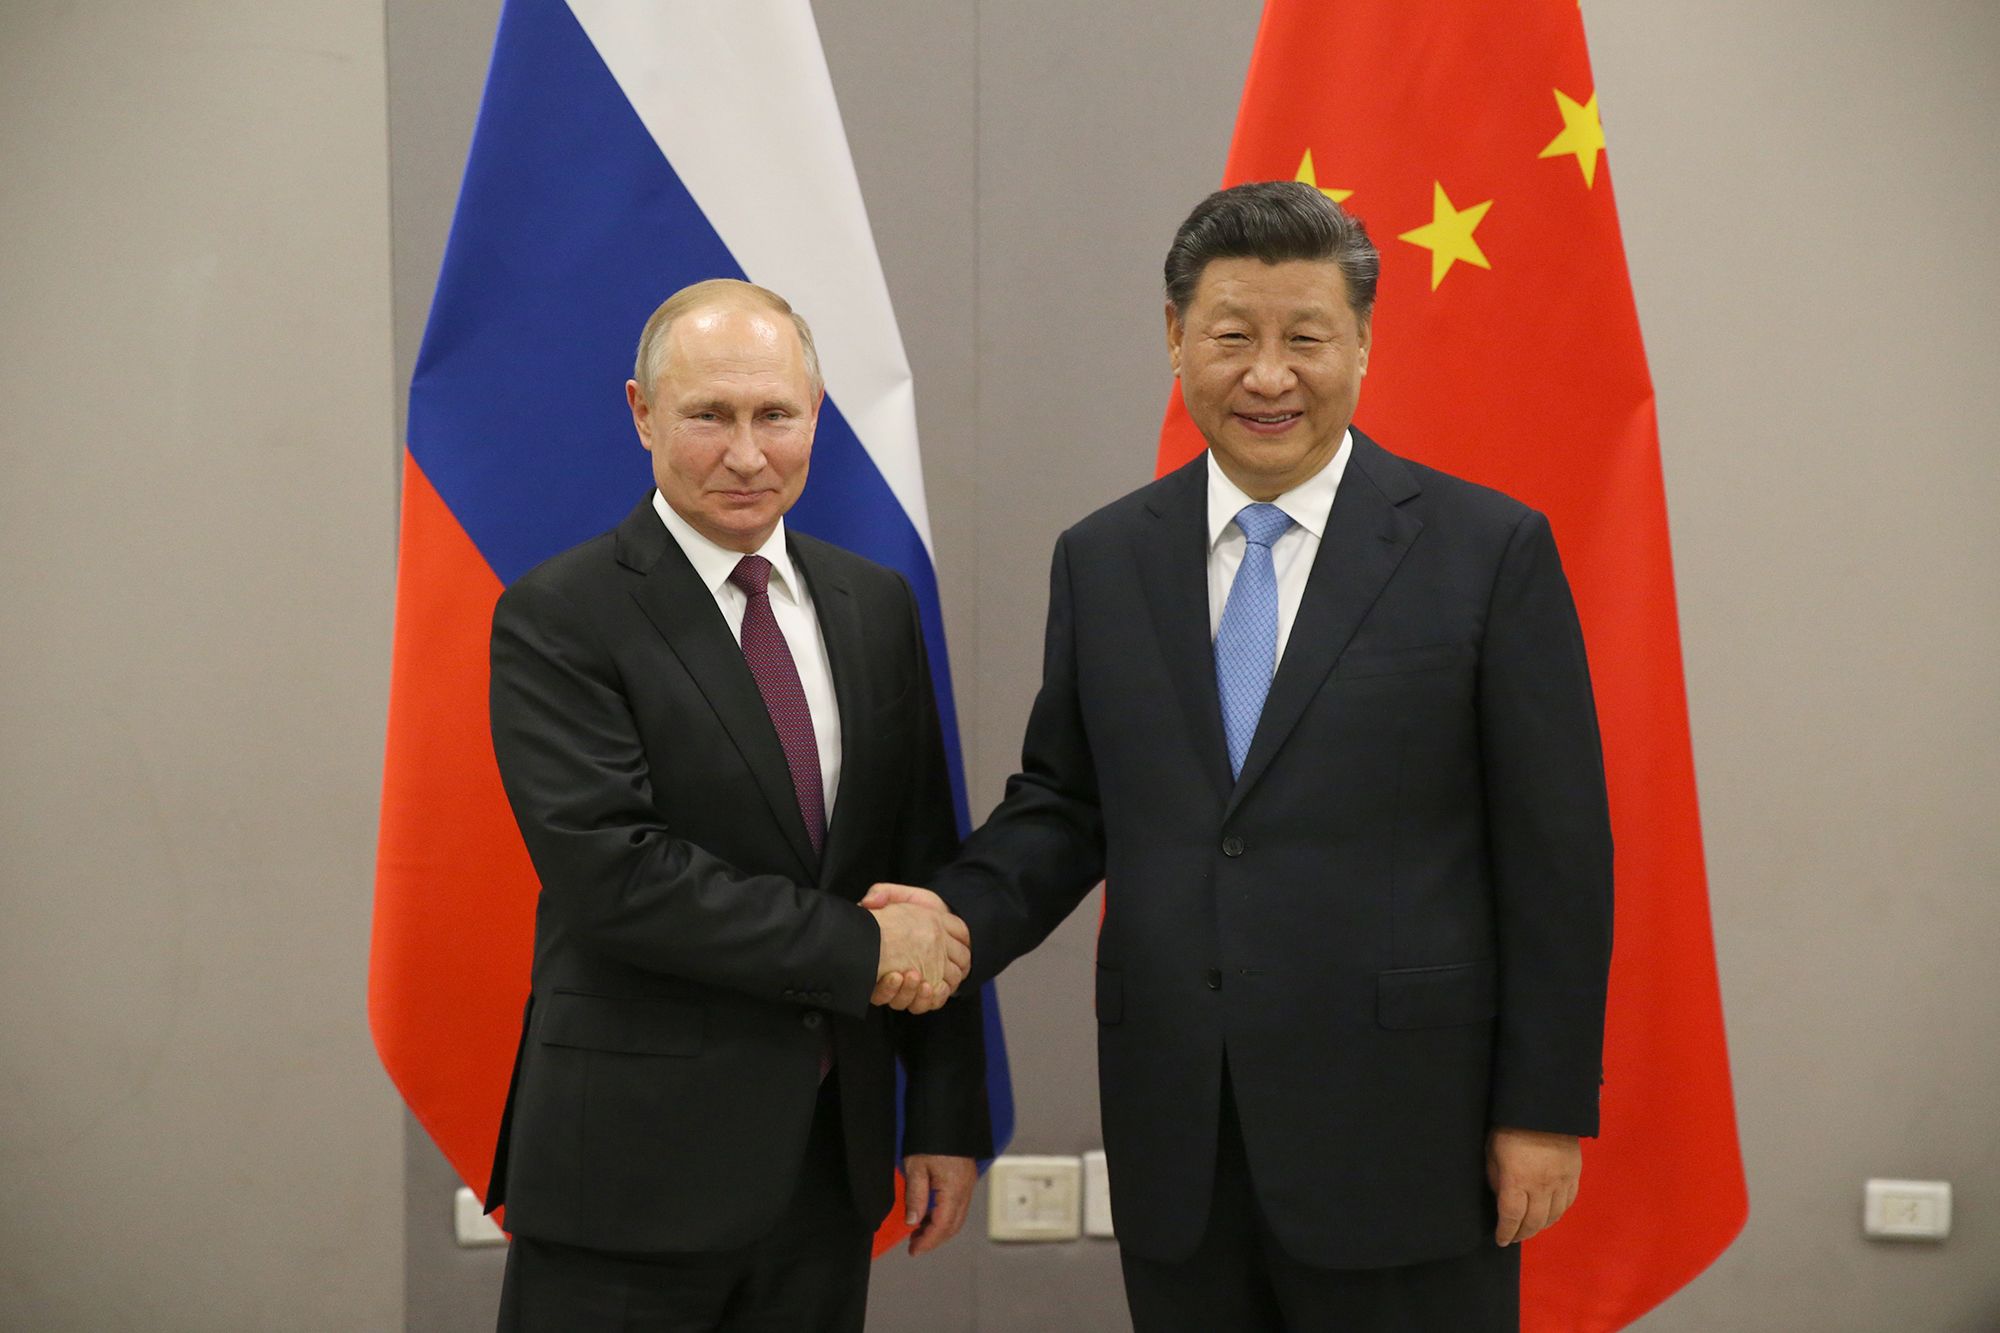 زيارة نادرة.. ماذا يفعل بوتين في الصين؟